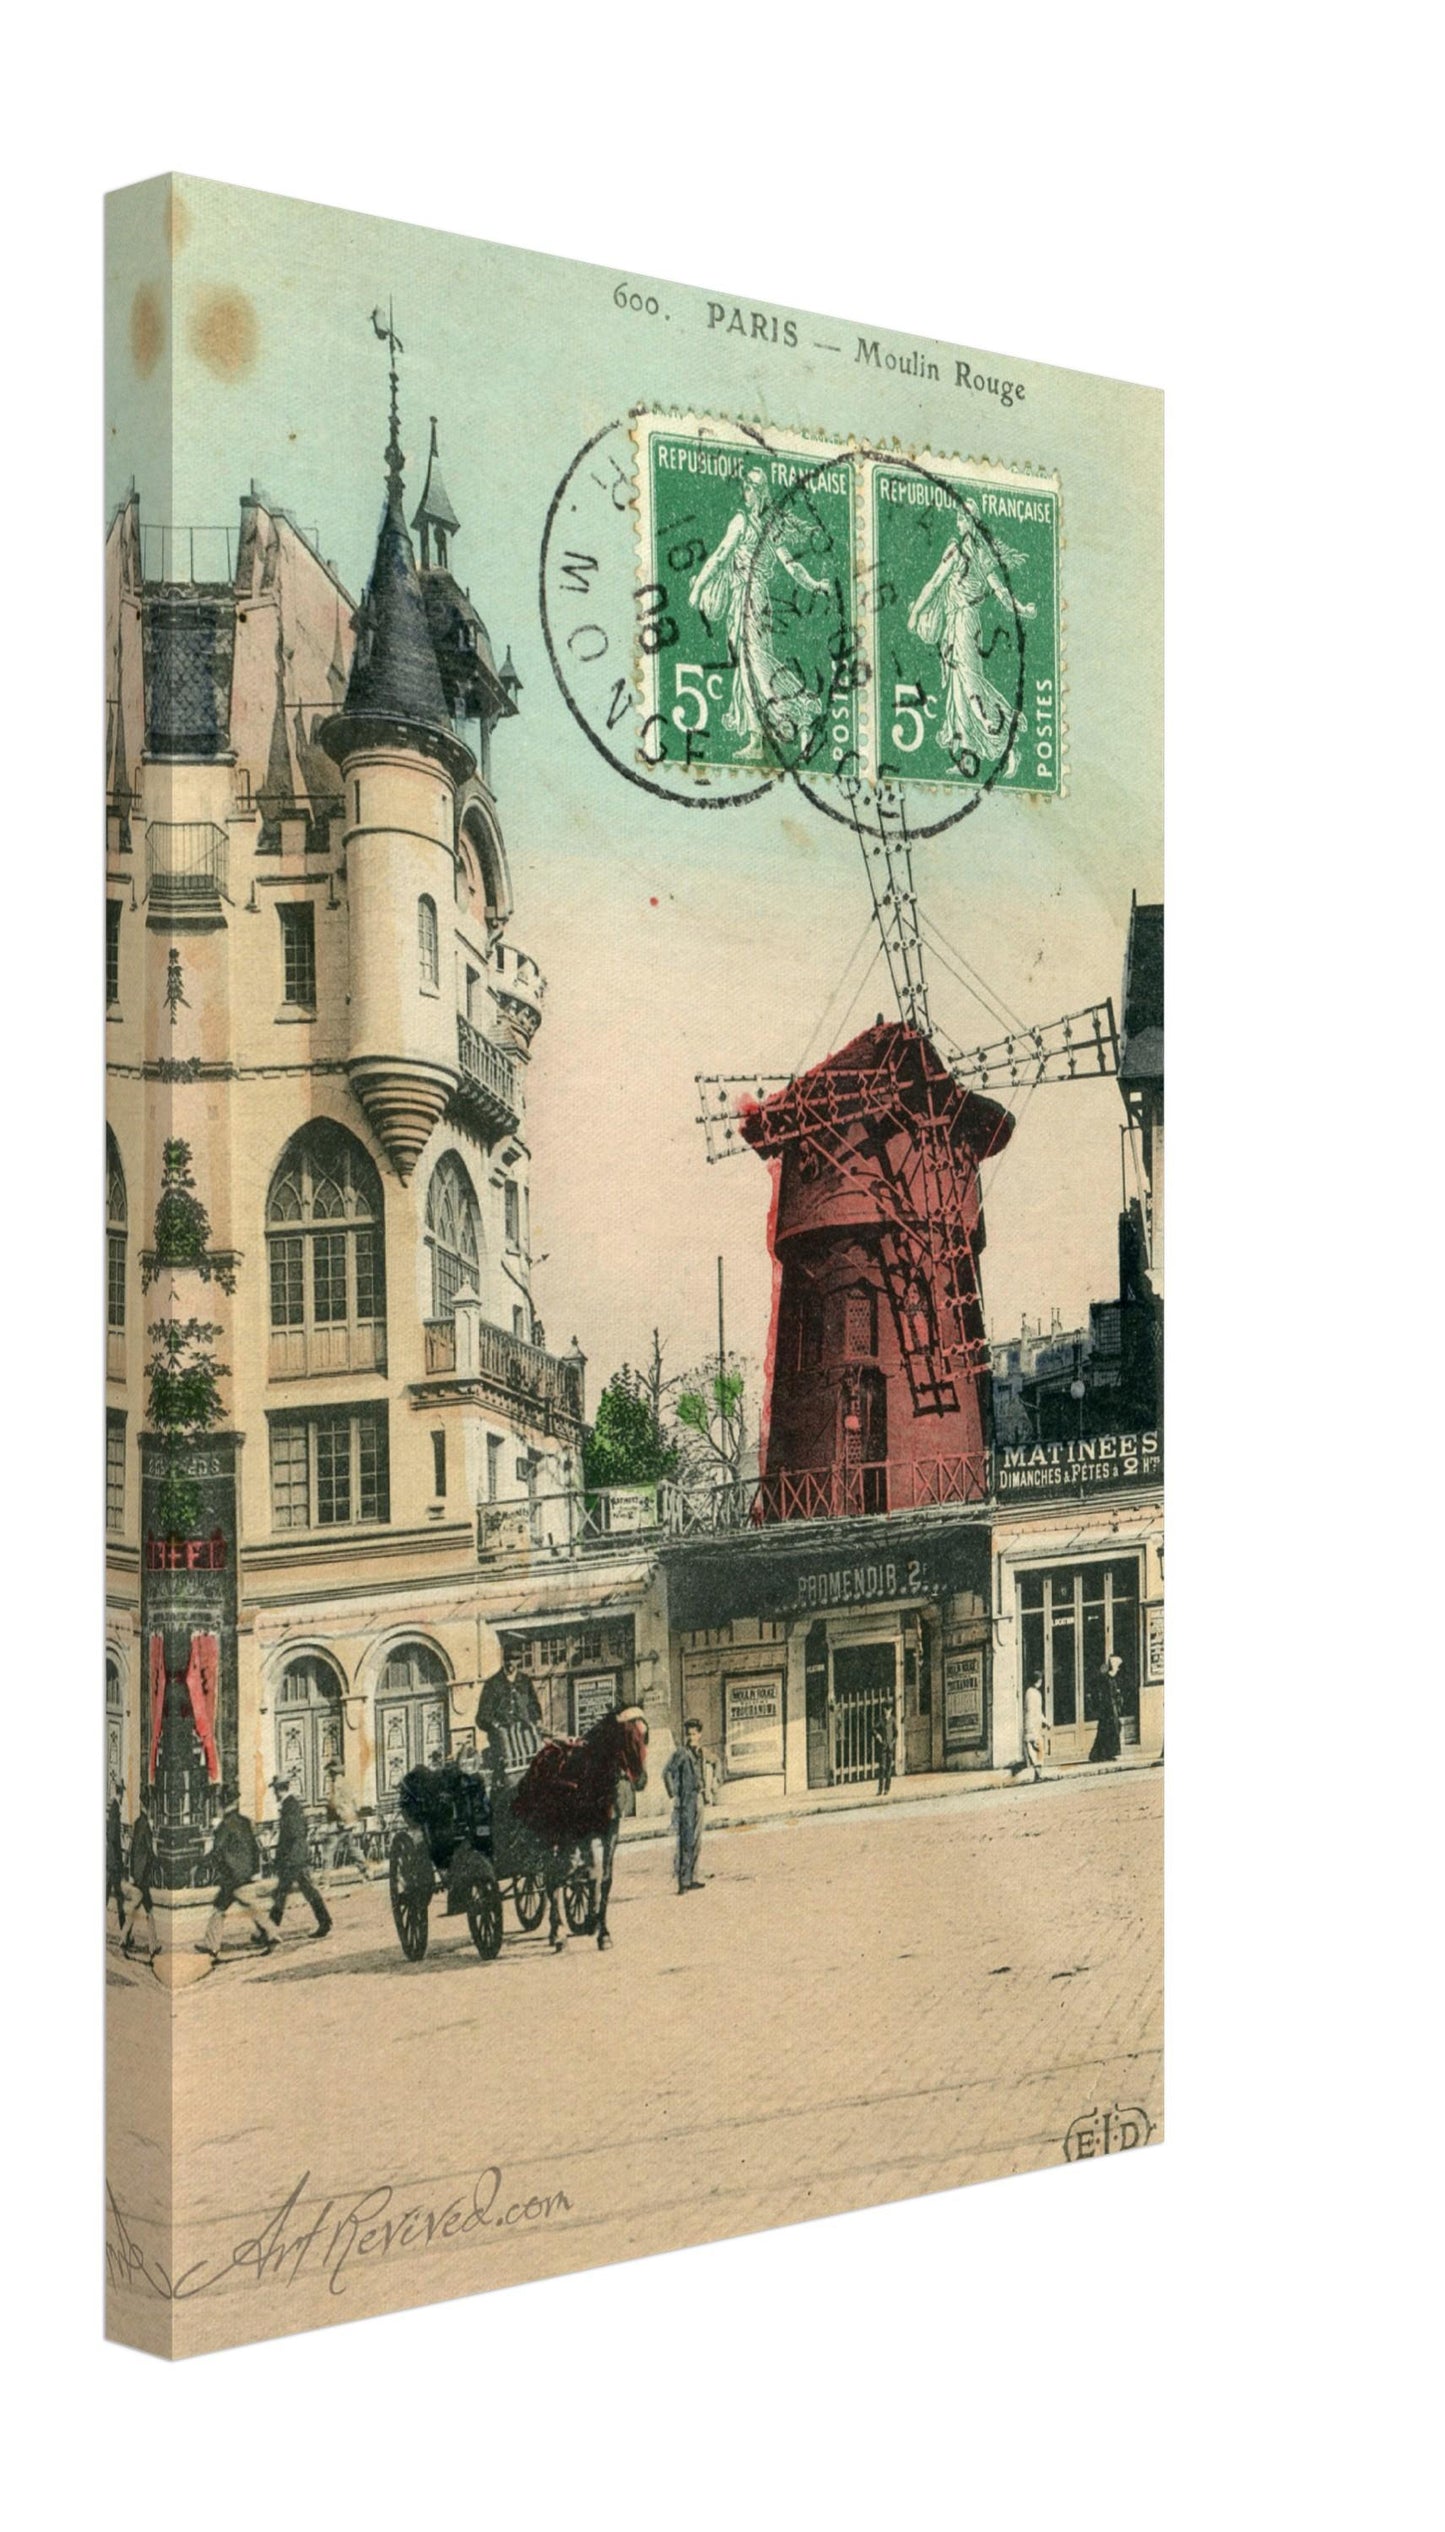 Paris La Moulin Rouge 07-16-1908